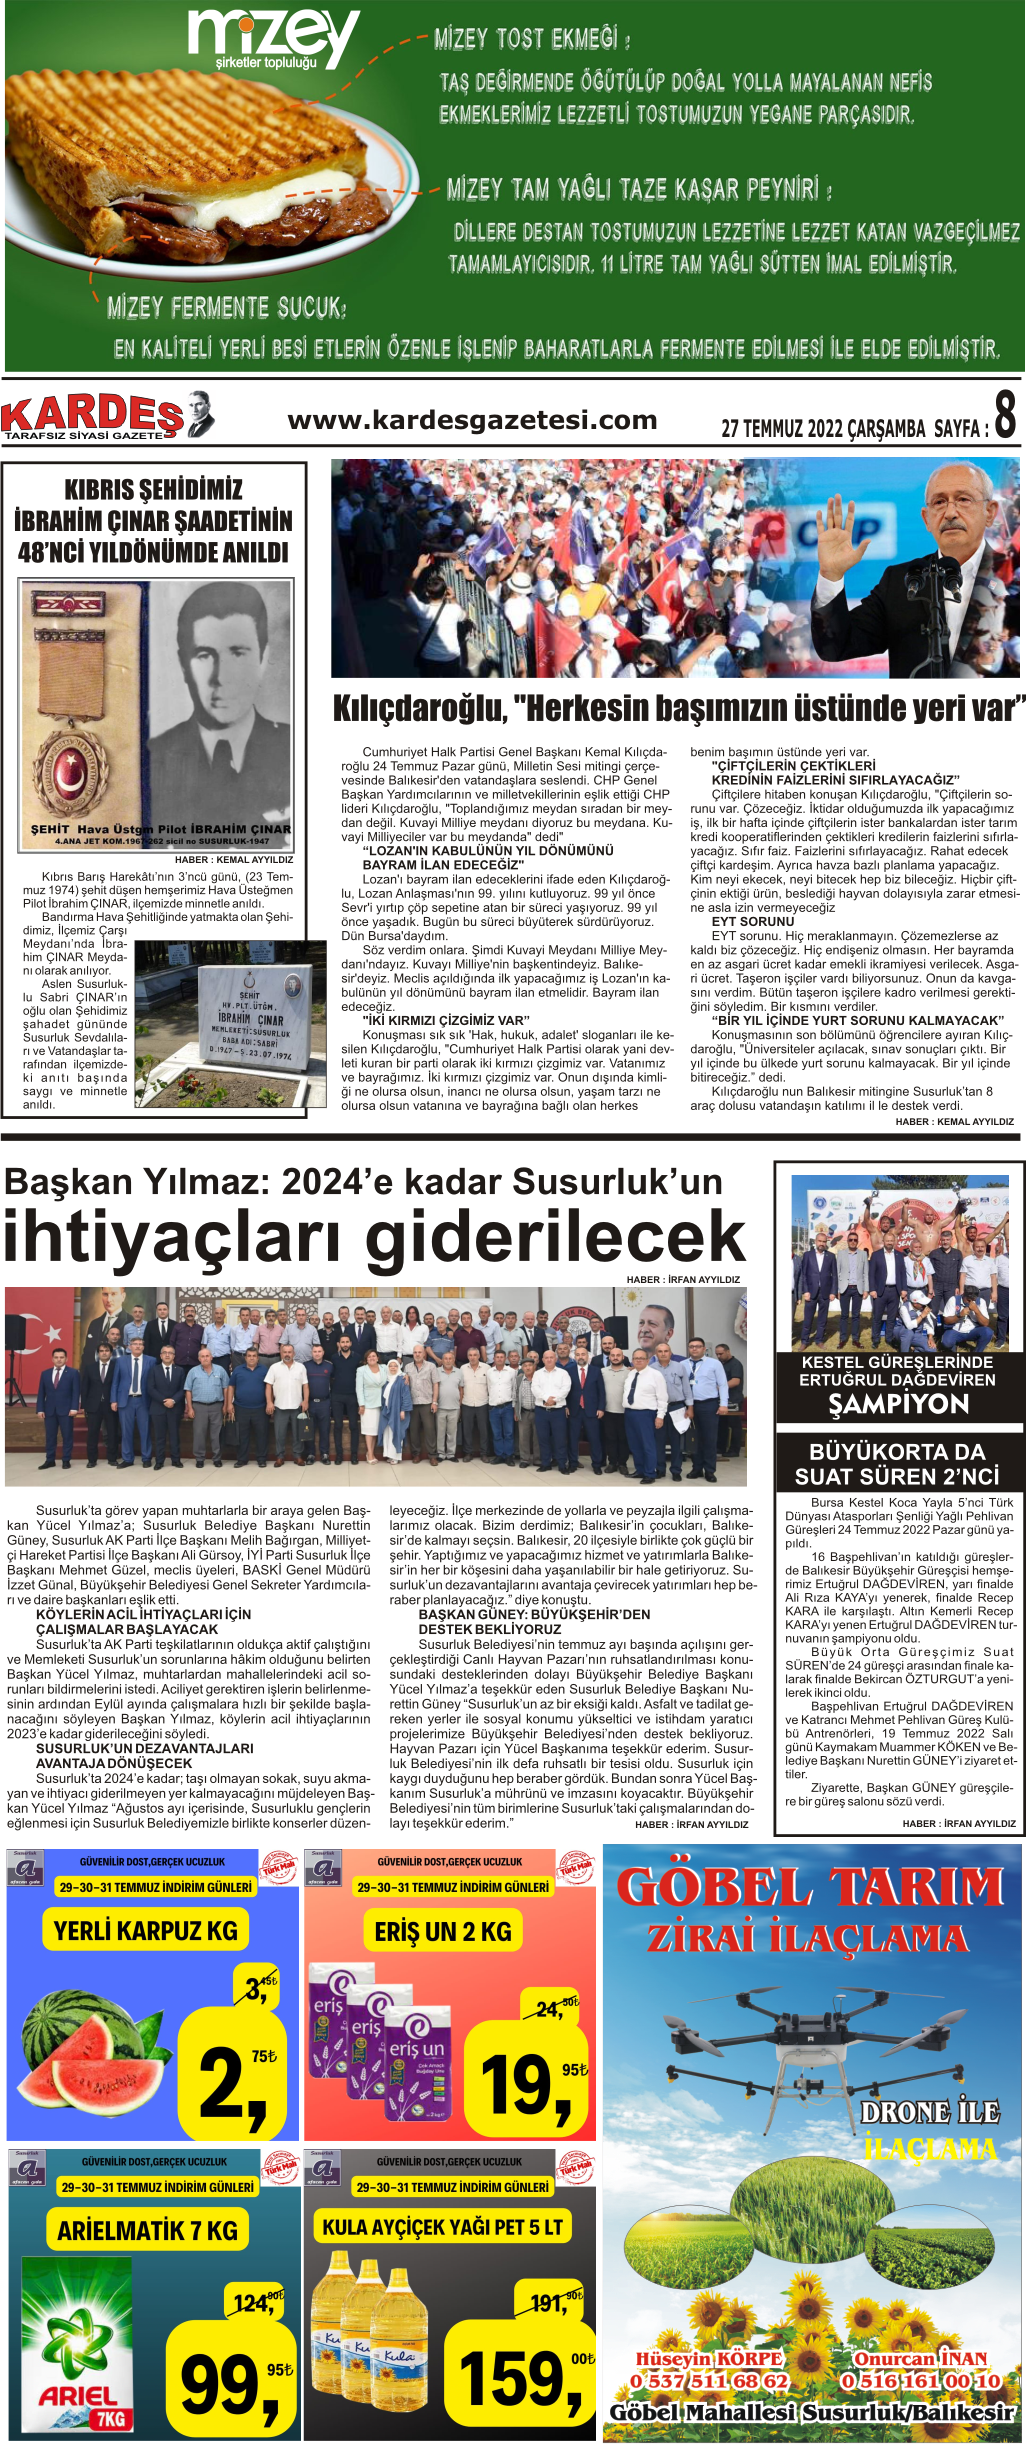 27.07.2022 Tarihli Kardeş Gazetesi Sayfa 8